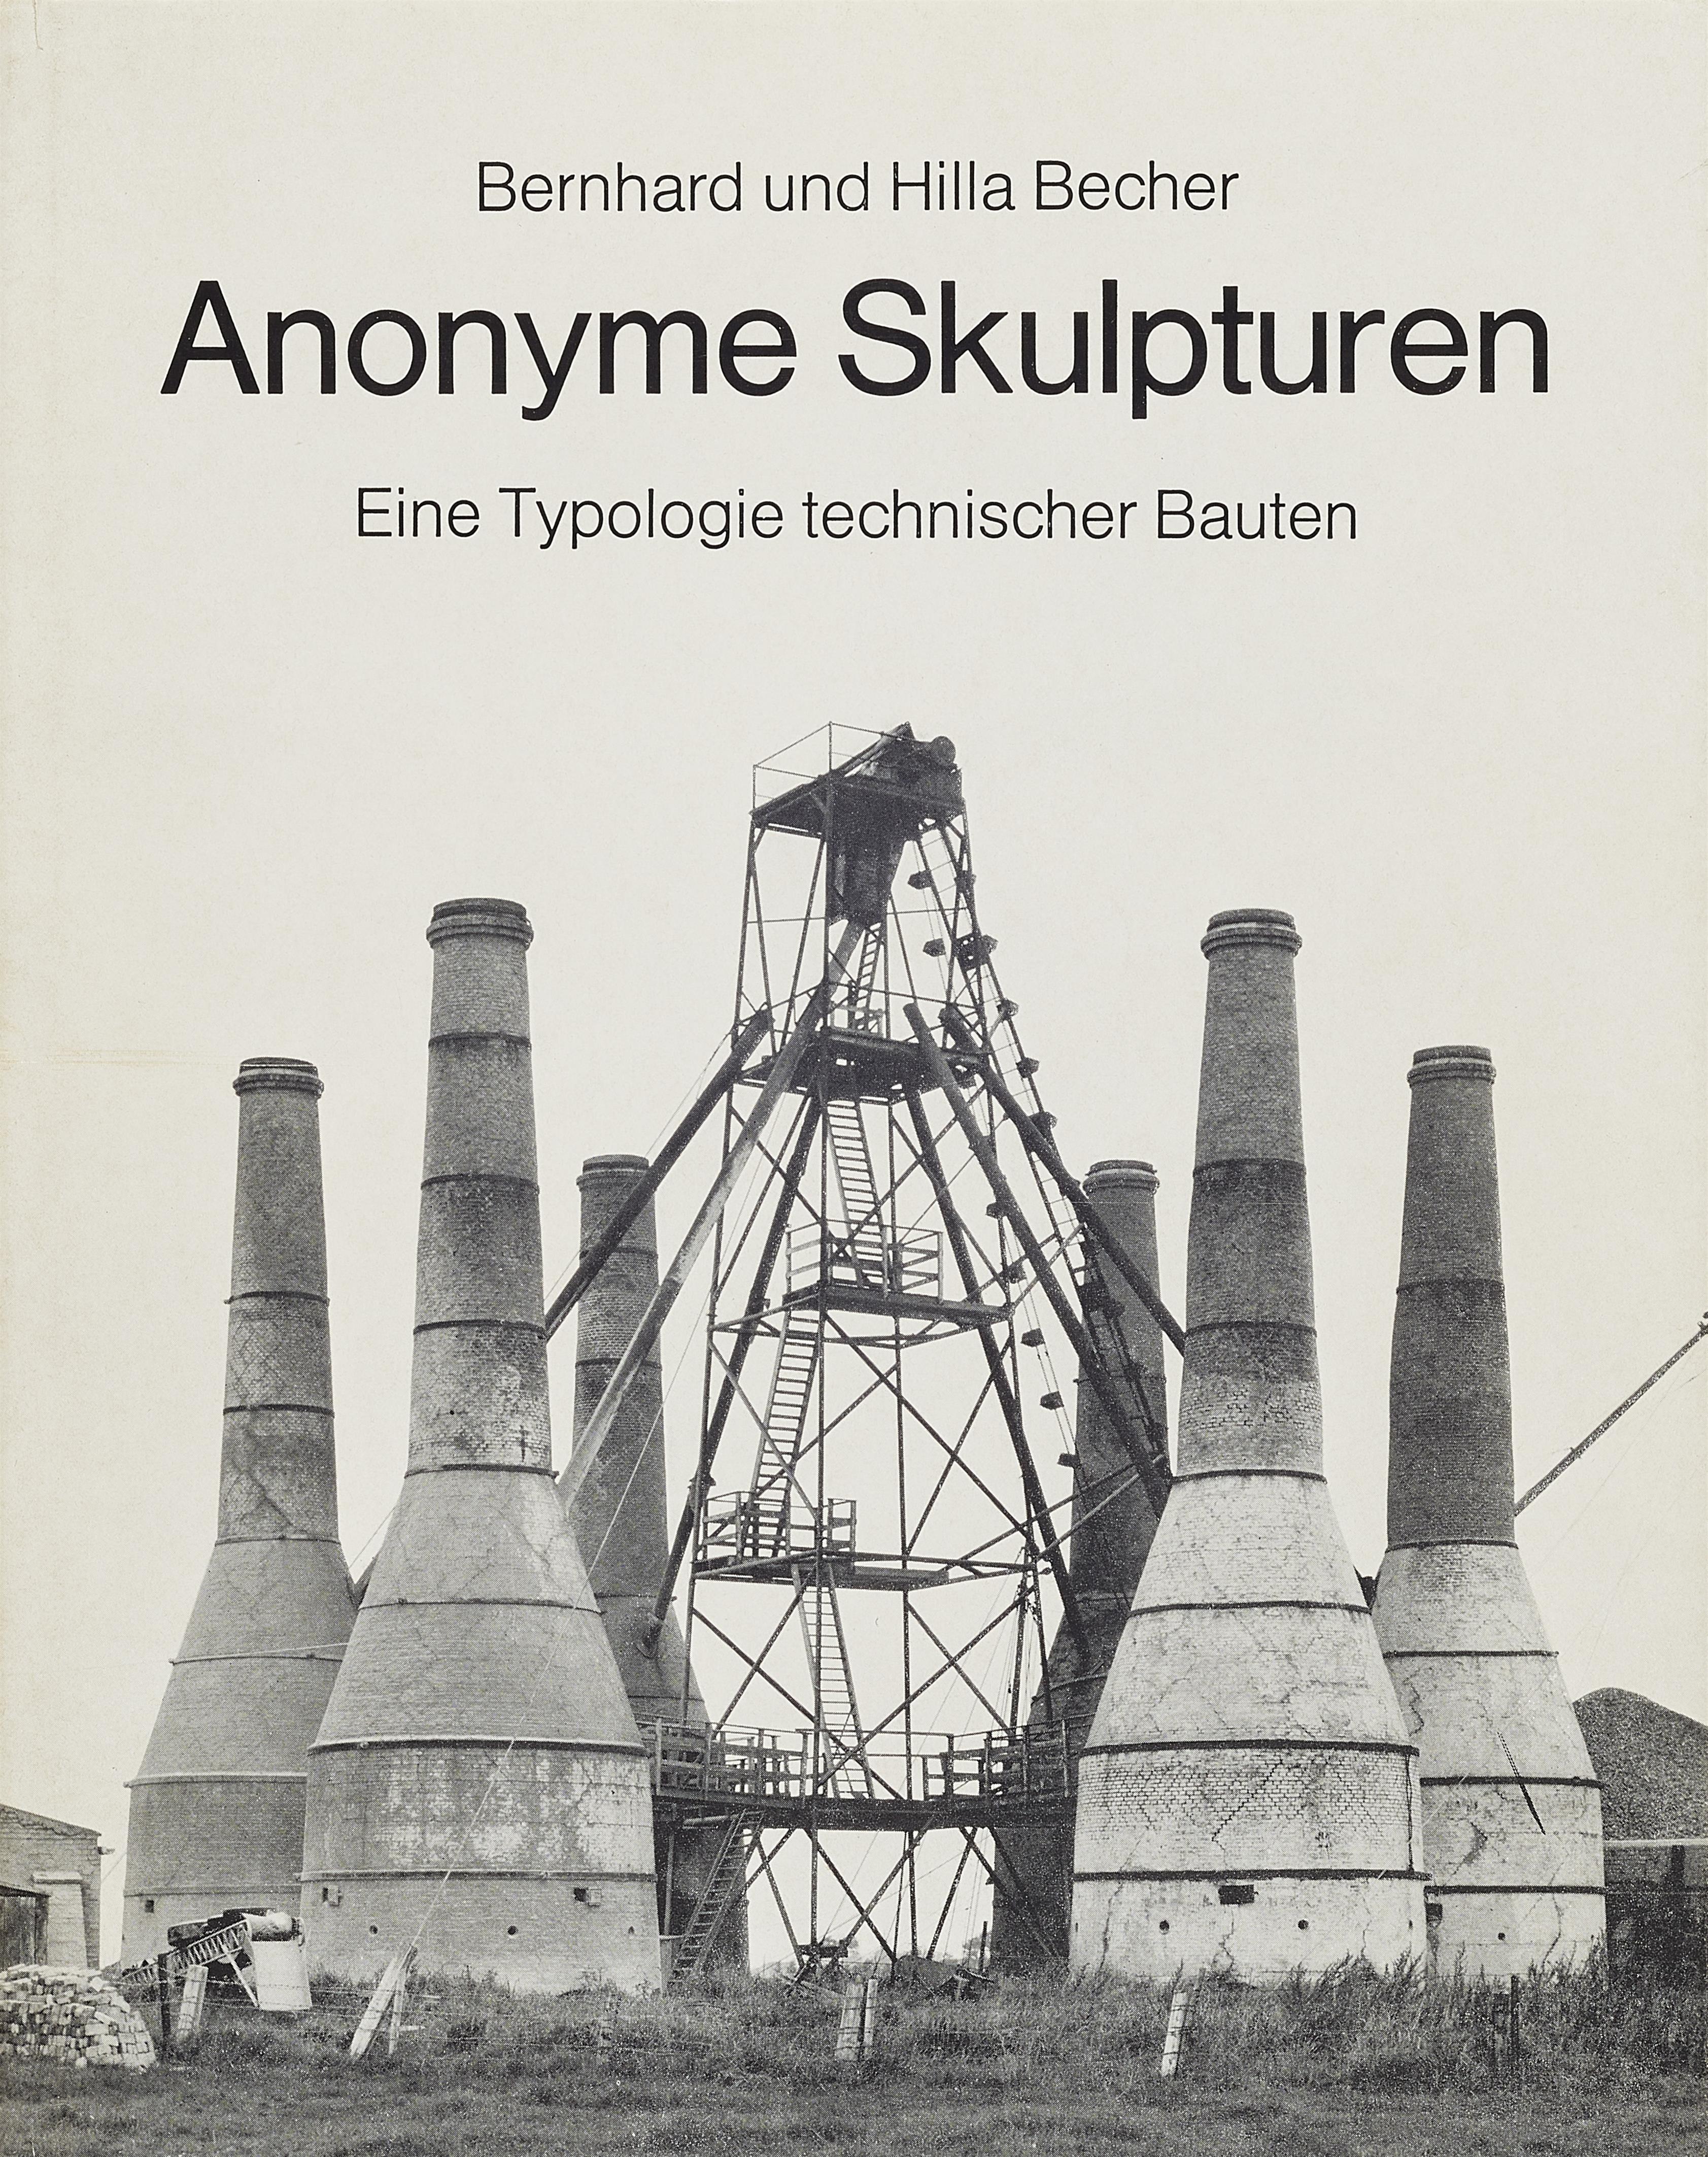 Bernd und Hilla Becher - Anonyme Skulpturen. Eine Typologie technischer Bauten - image-1